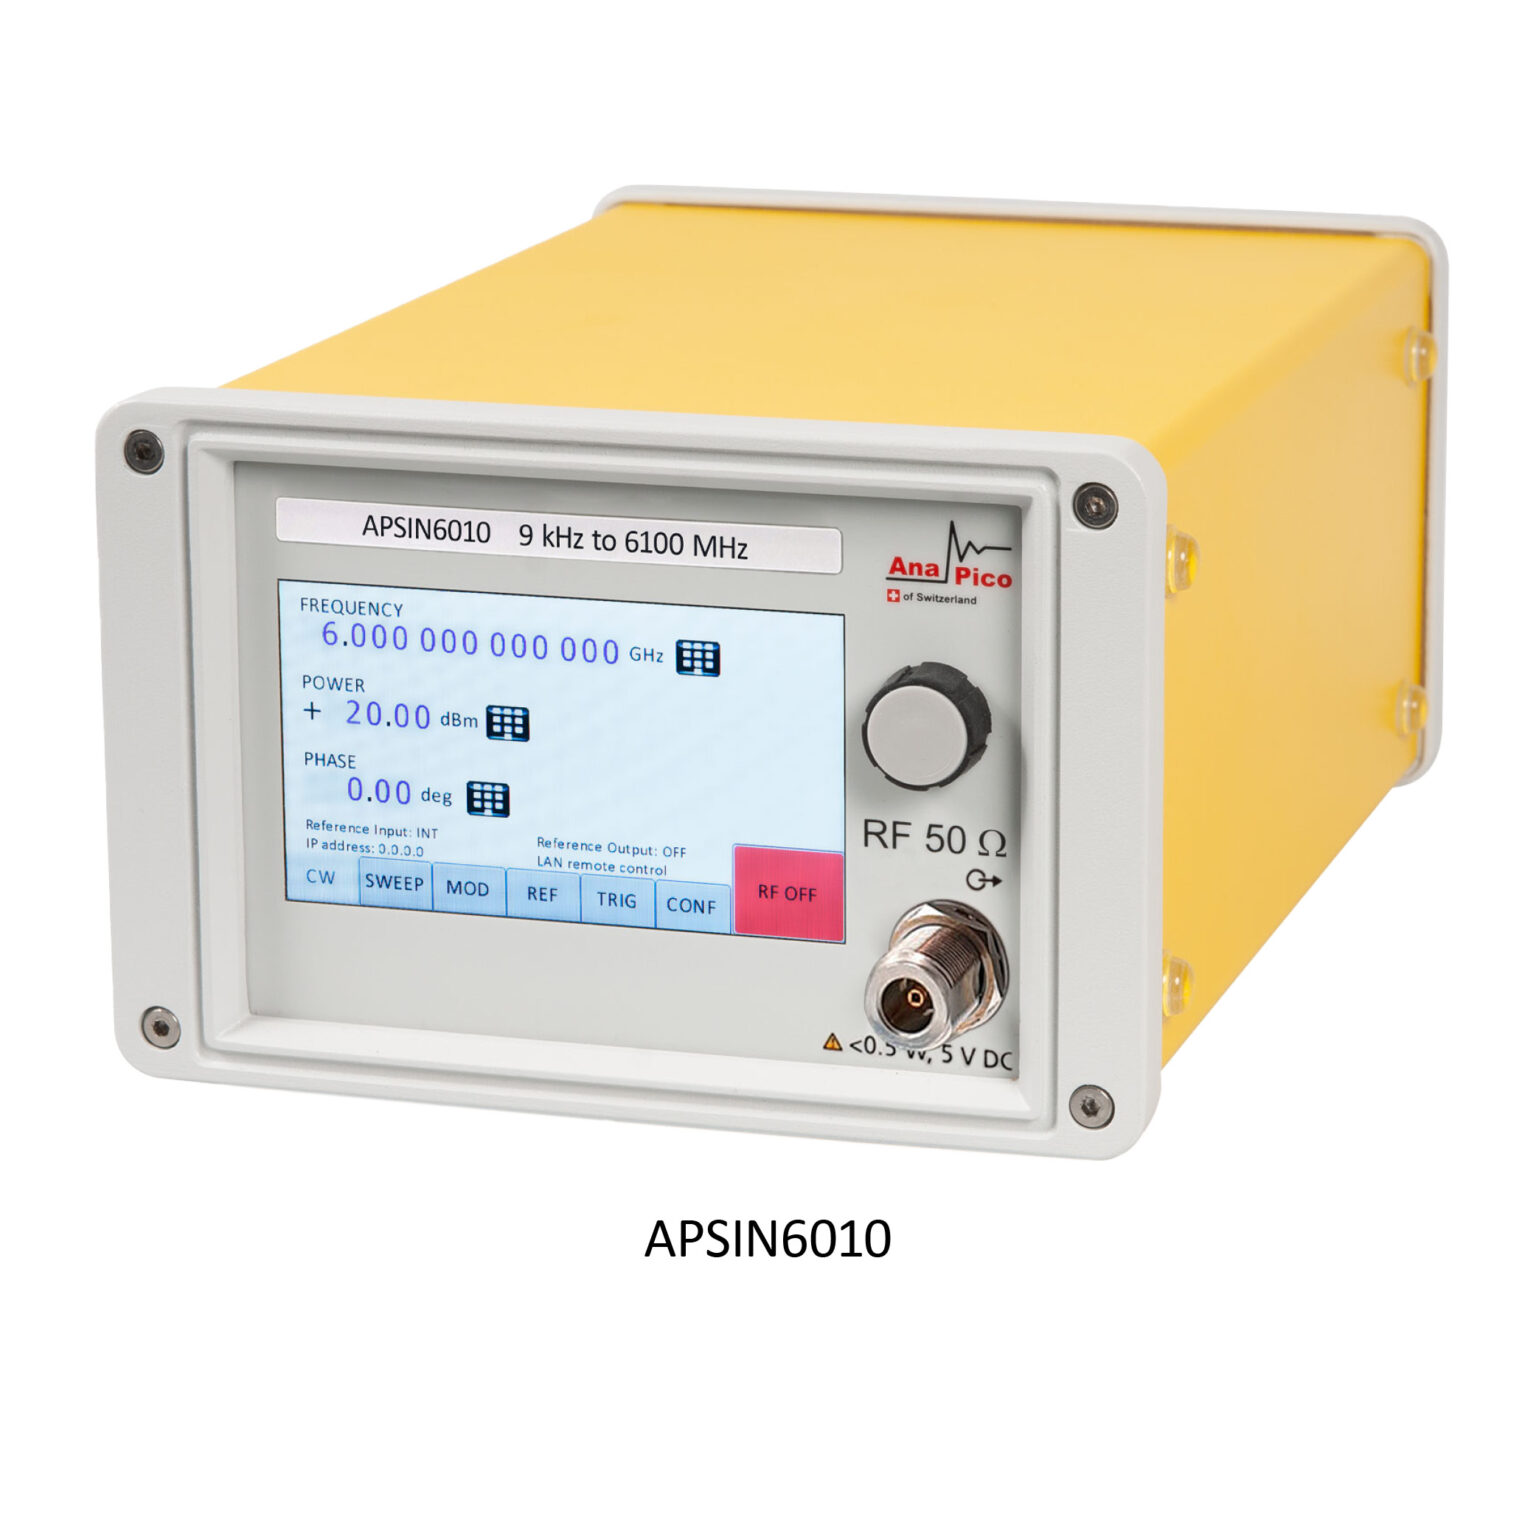 APSIN RF Signal Generator